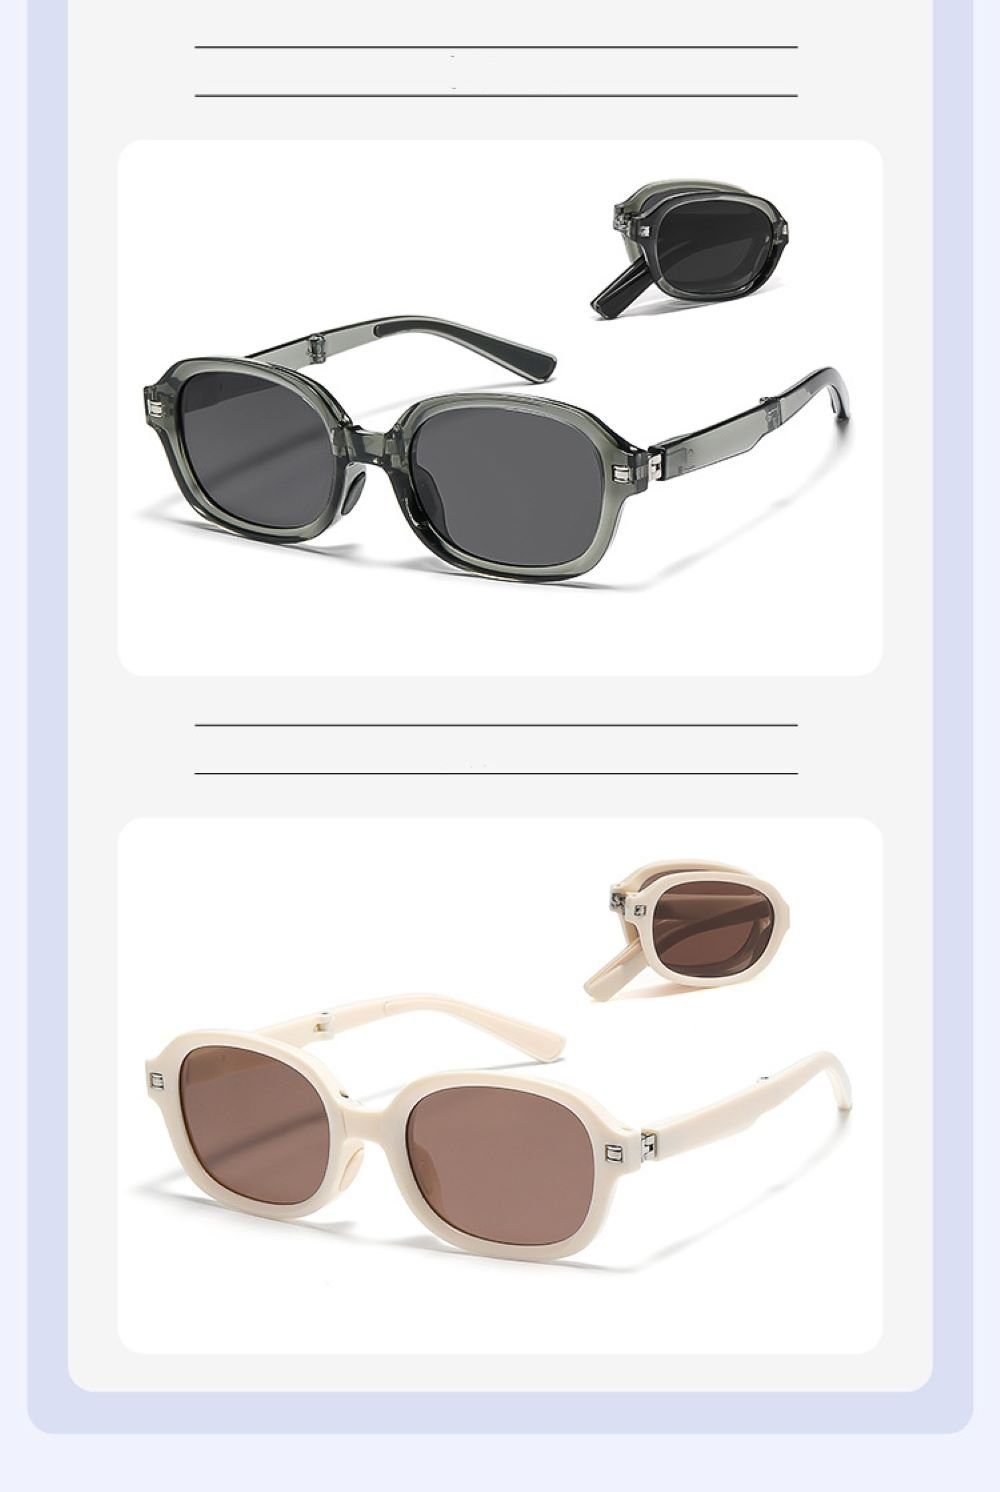 PACIEA Sonnenbrille PACIEA Sonnenbrille Damen polarisiert Braun Schutz 100% UV400 faltbar Herren